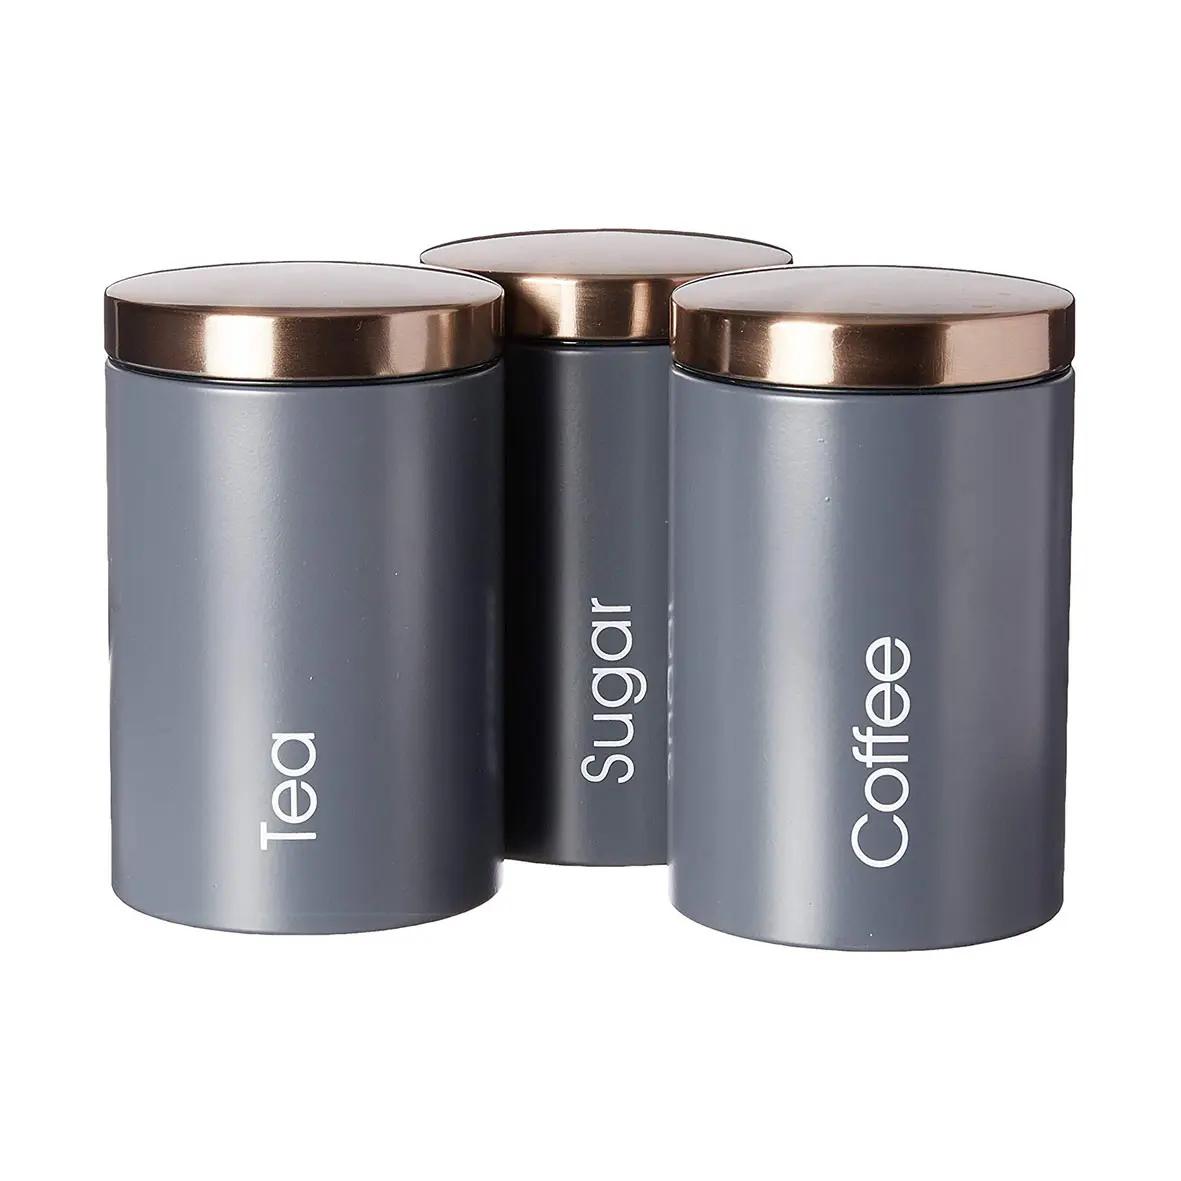 3 개의 커피 양철통 세트 공기 단단한 부엌 스테인리스 금속 저장 상자/양철통/bin 의 세트